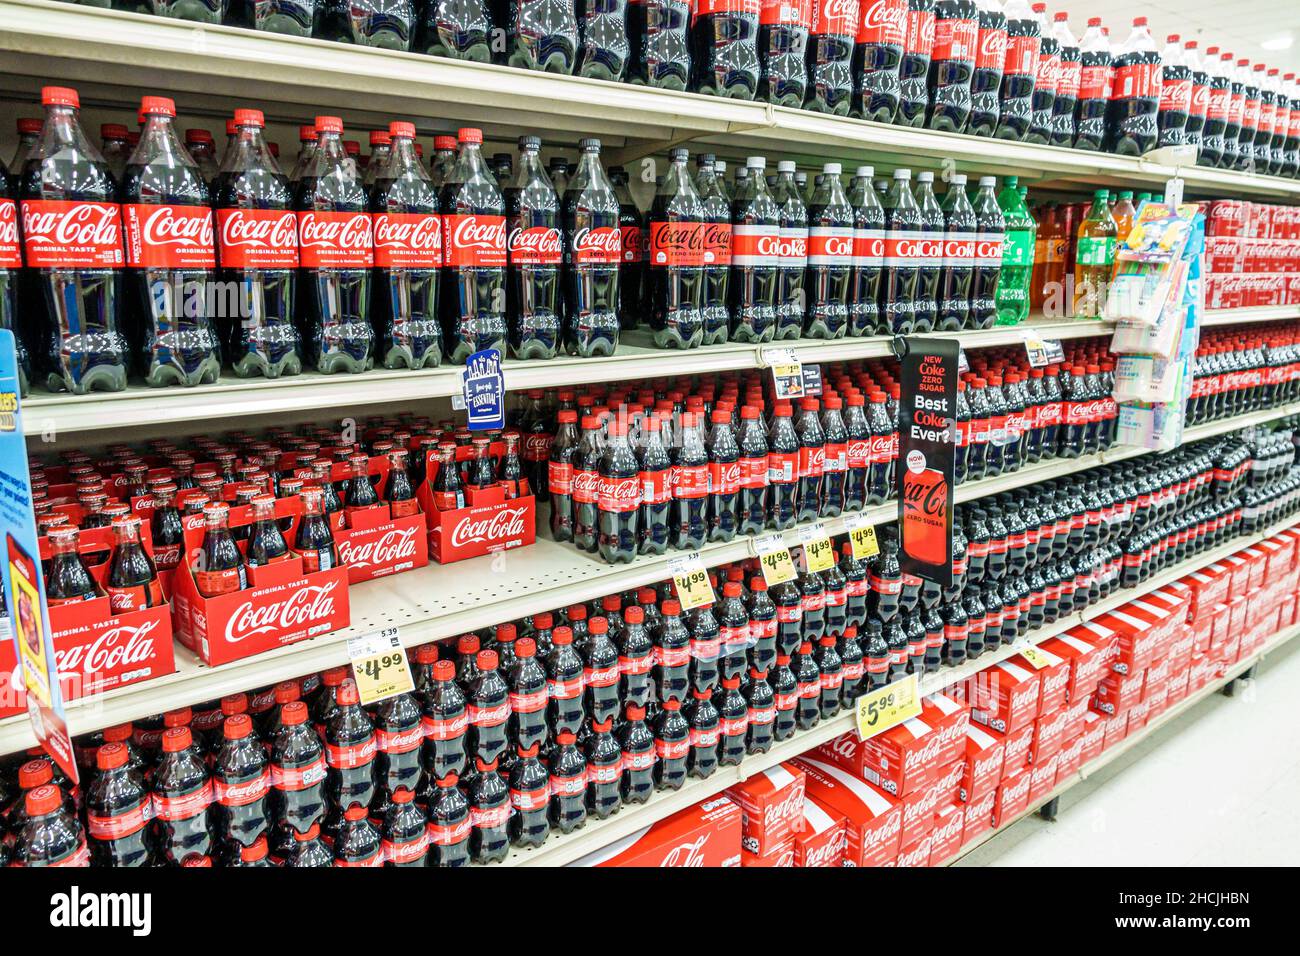 Orlando Florida Winn-Dixie Lebensmittelgeschäft Supermarkt im Inneren Regal  Regale Verkauf Coke Coca Cola Produkte Softdrinks anzeigen Stockfotografie  - Alamy